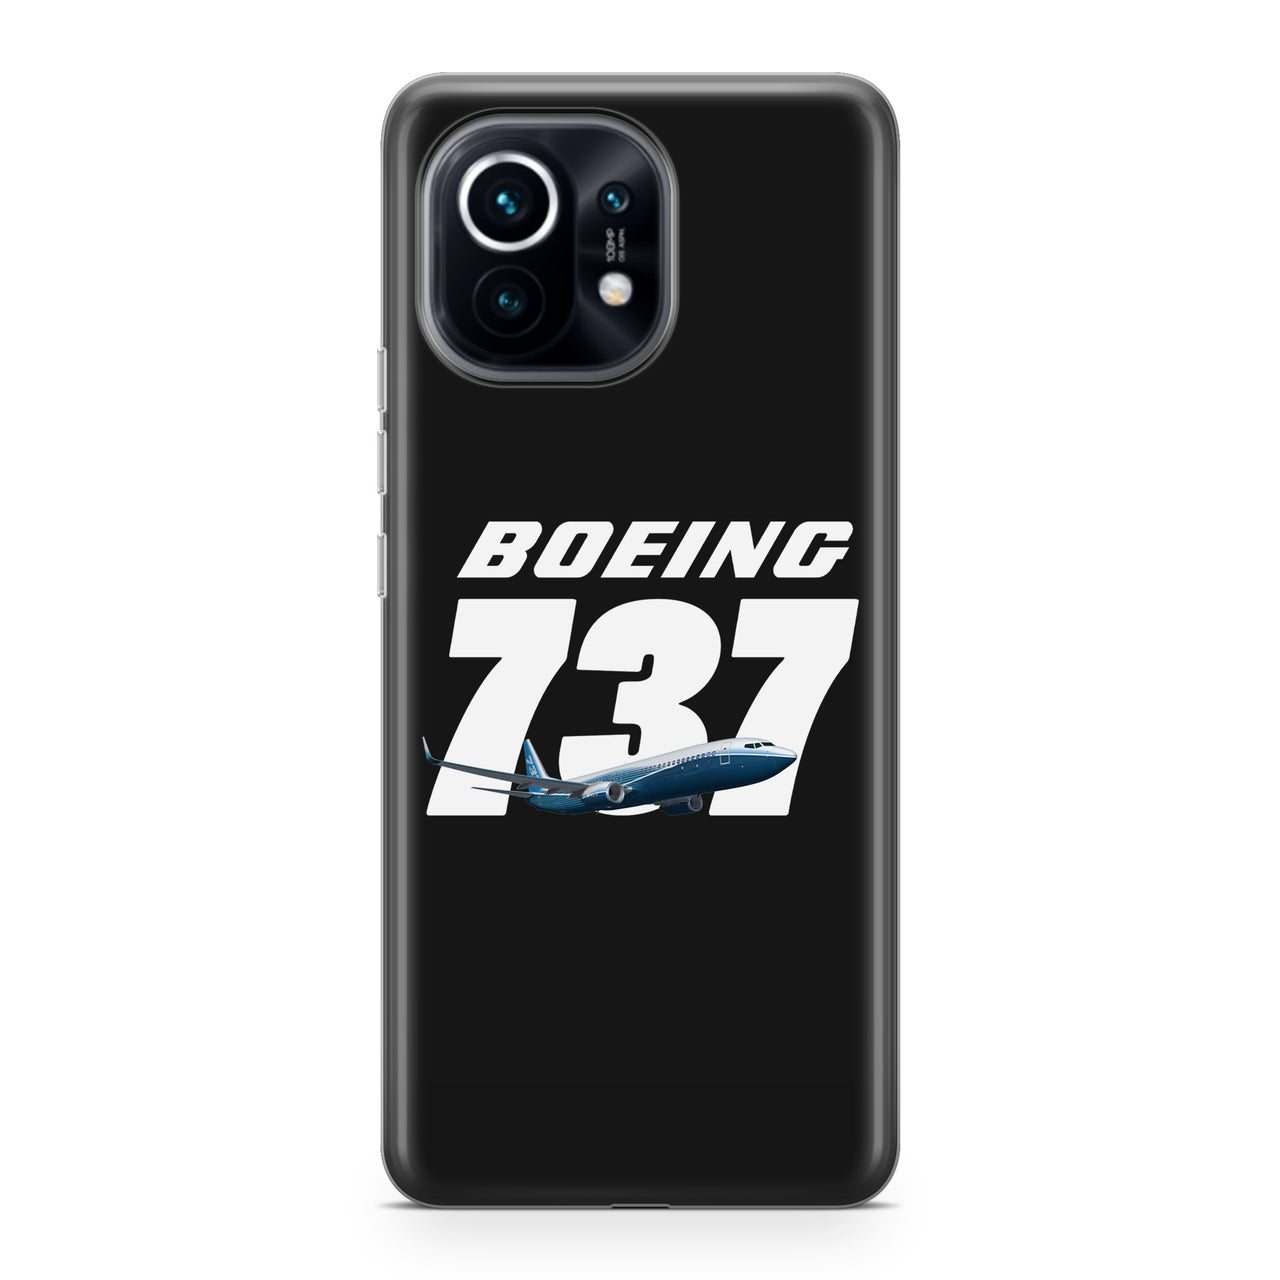 Super Boeing 737+Text Designed Xiaomi Cases